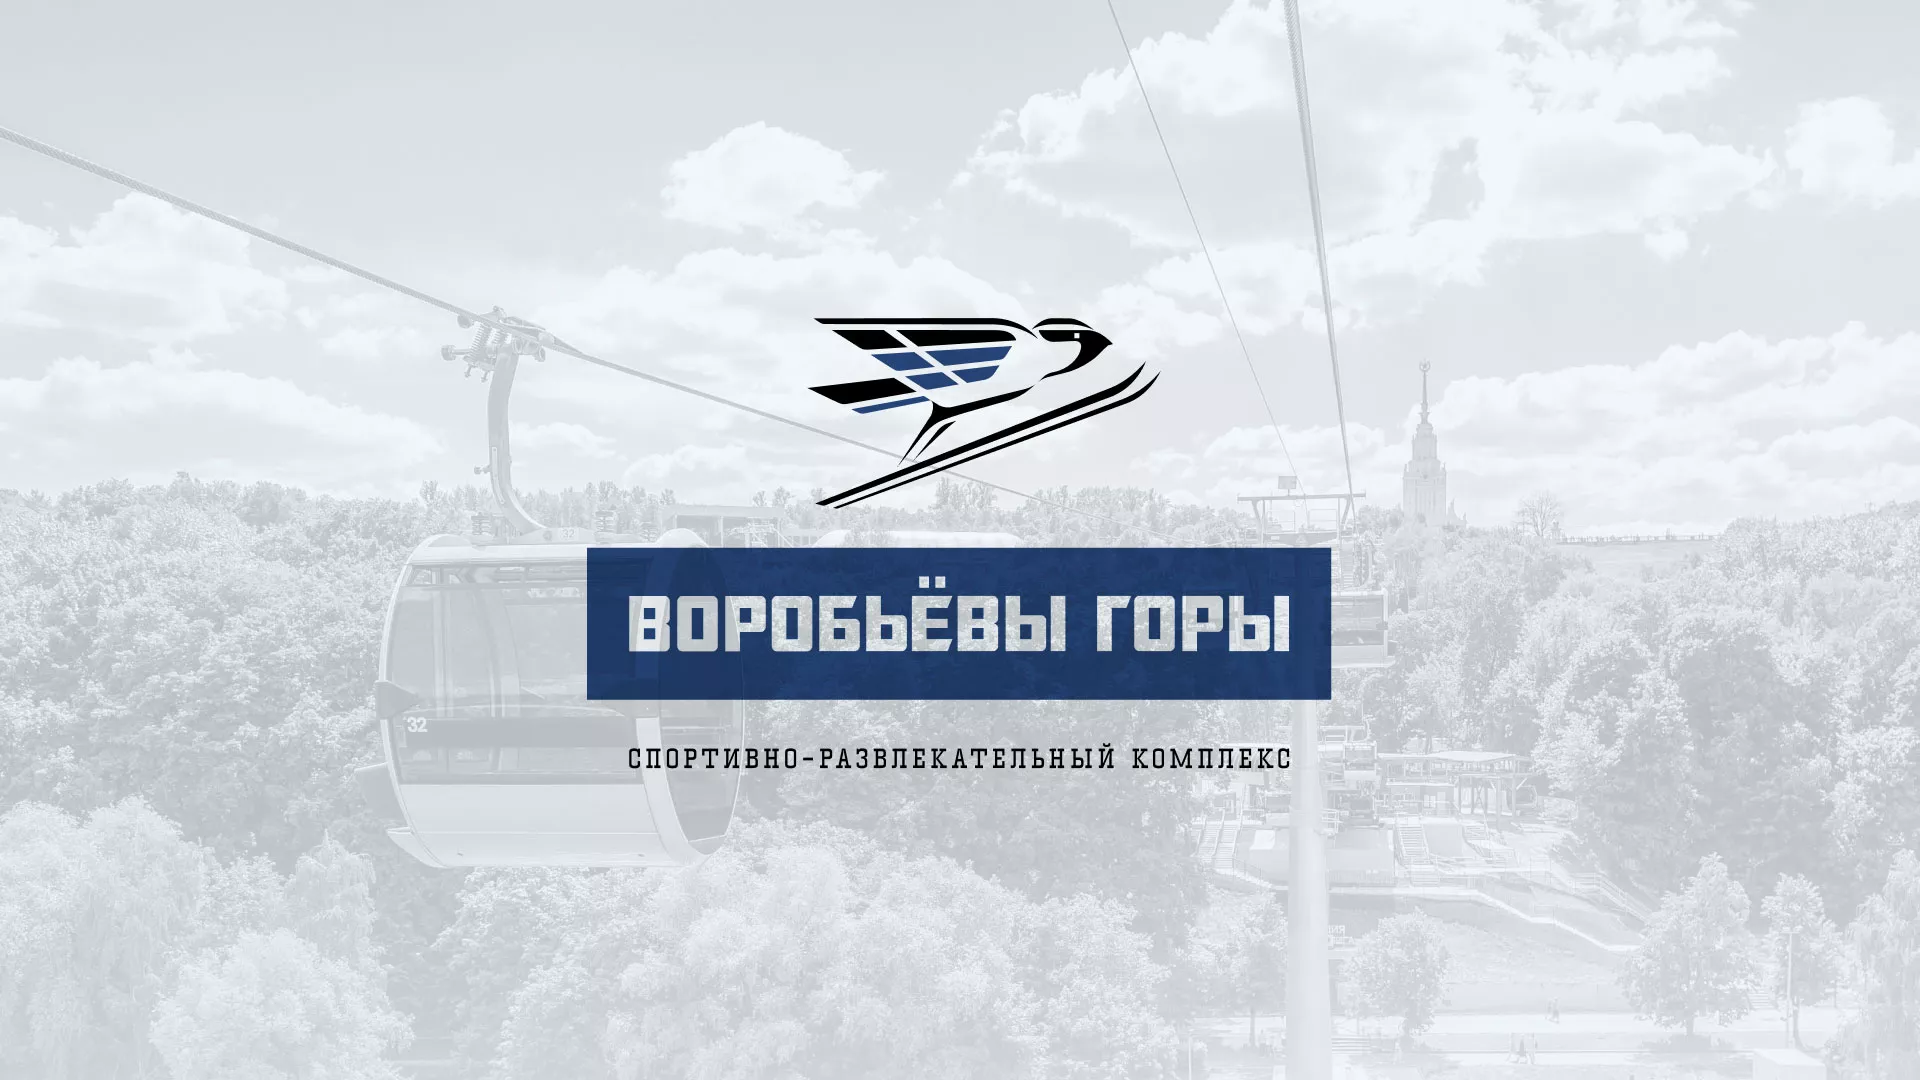 Разработка сайта в Хвалынске для спортивно-развлекательного комплекса «Воробьёвы горы»